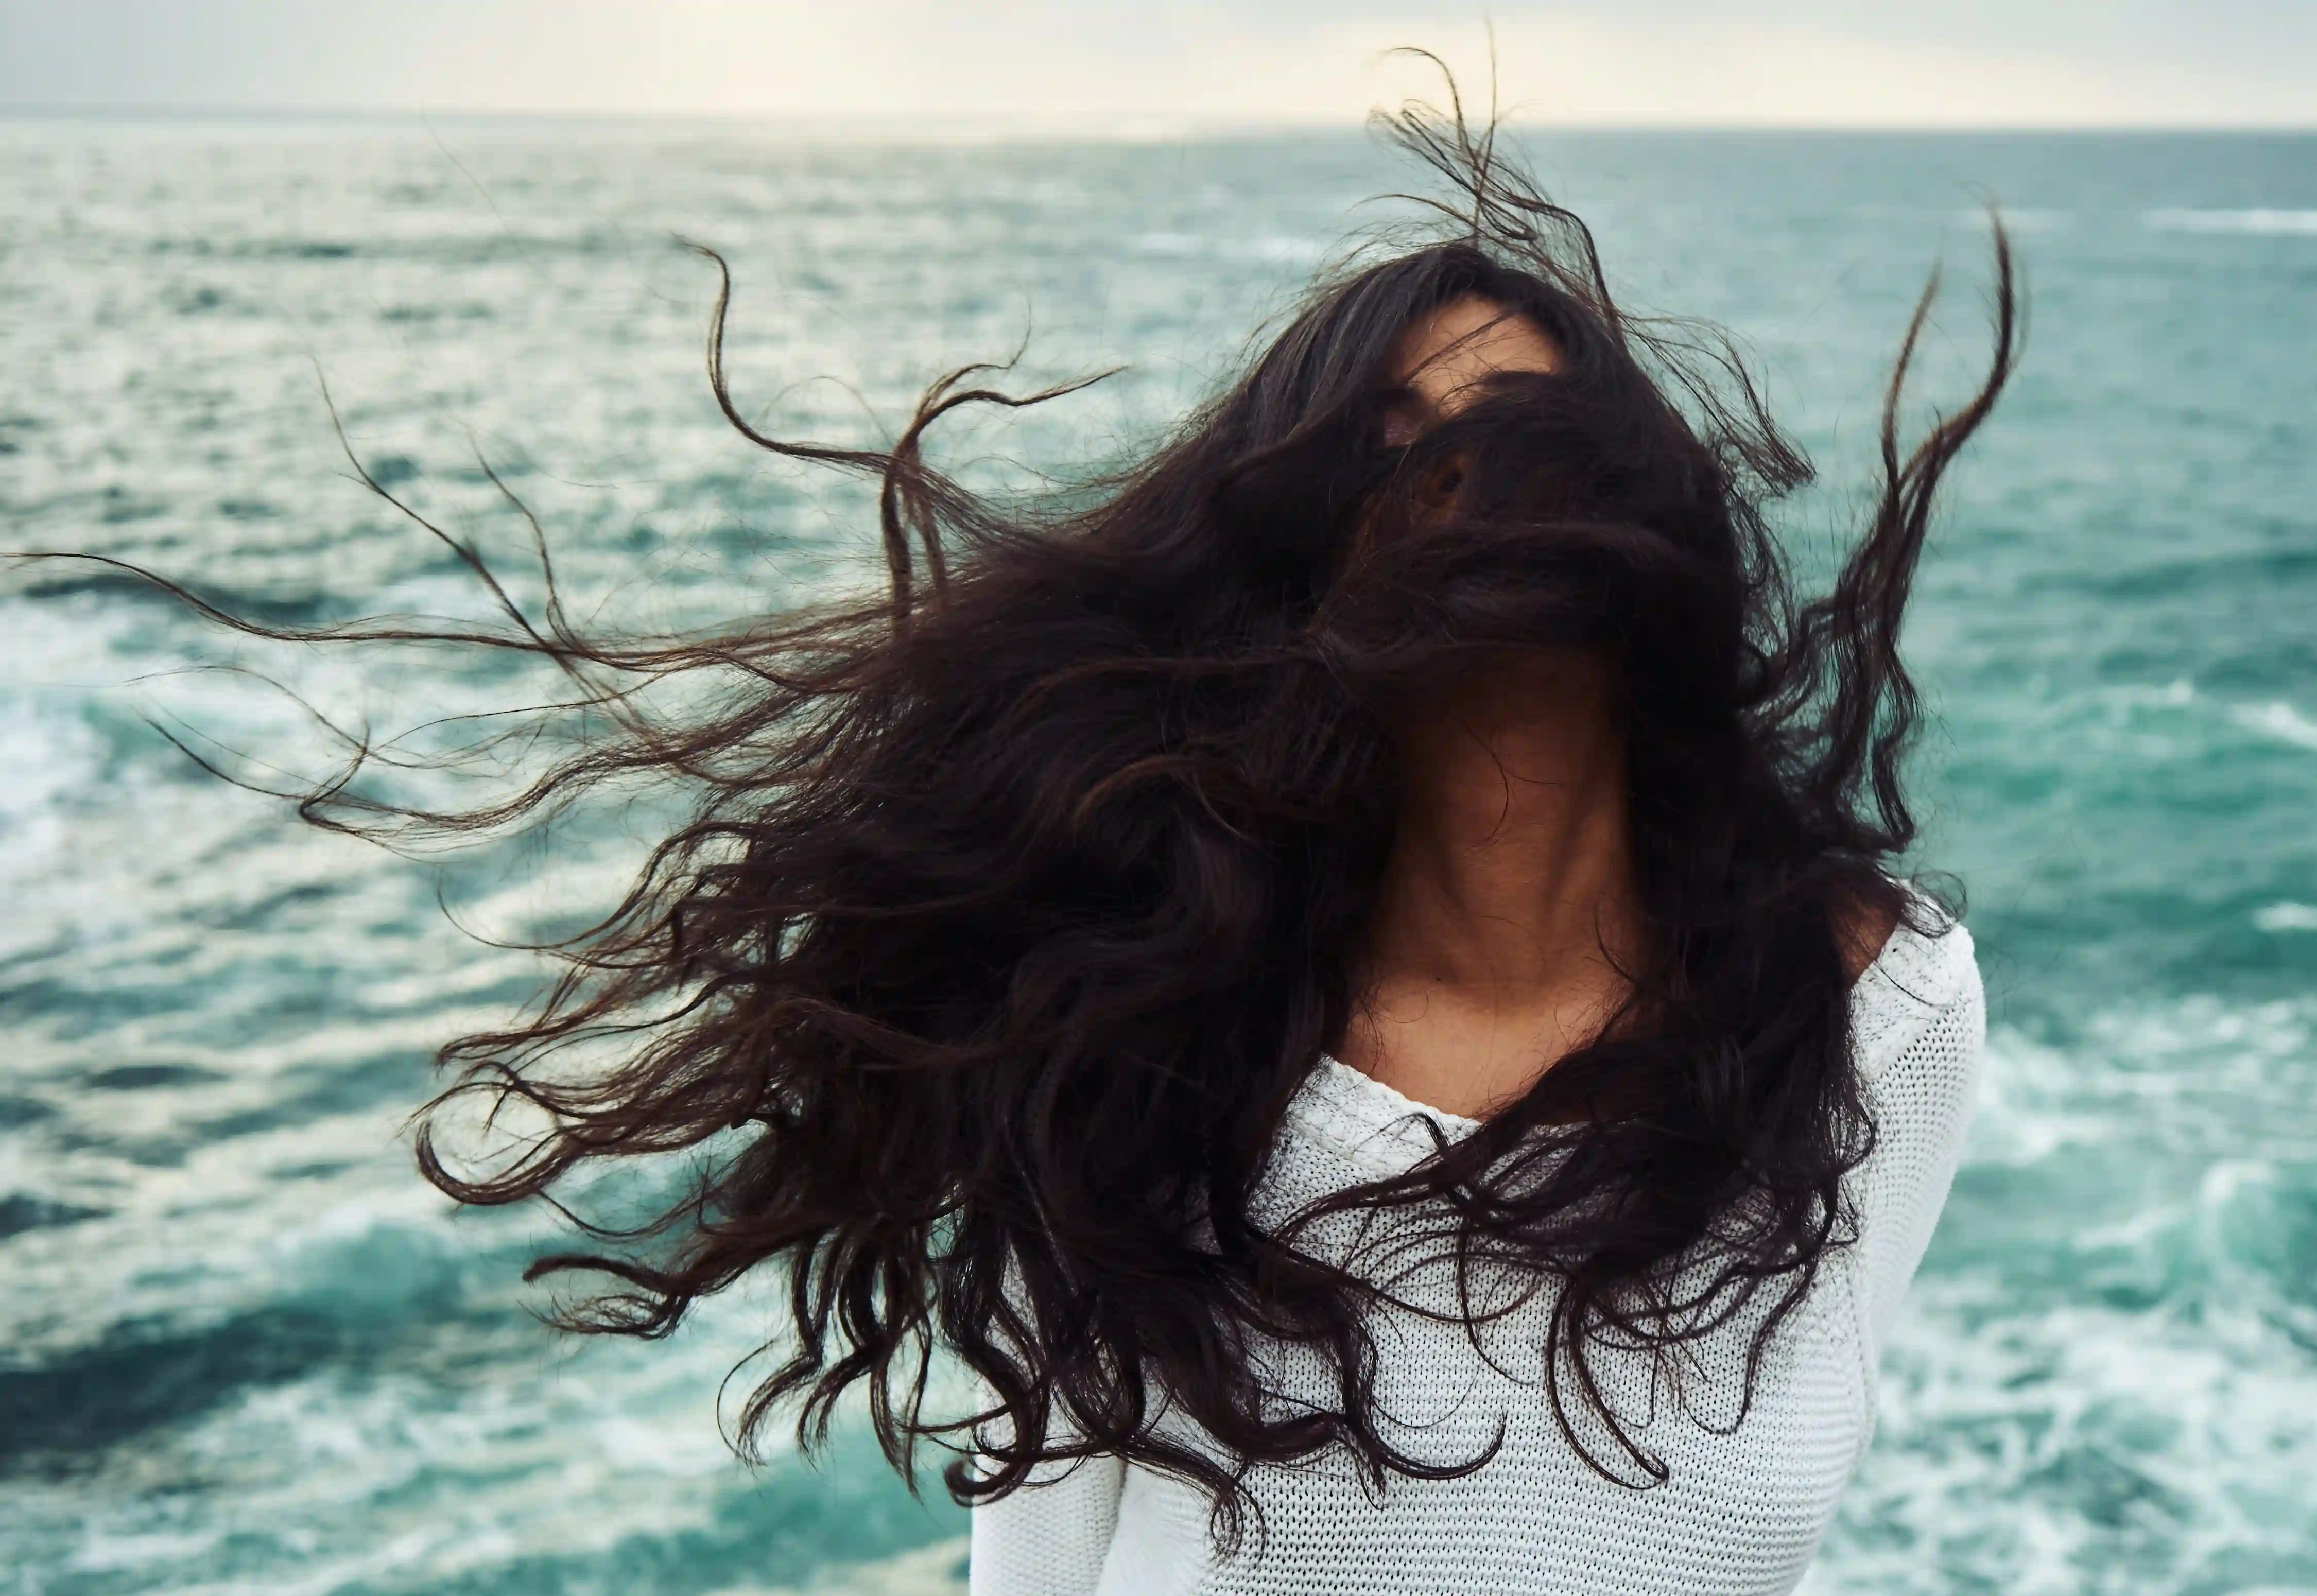 Moteris stovi prie jūros vėjas blaško jos juodos spalvos plaukus